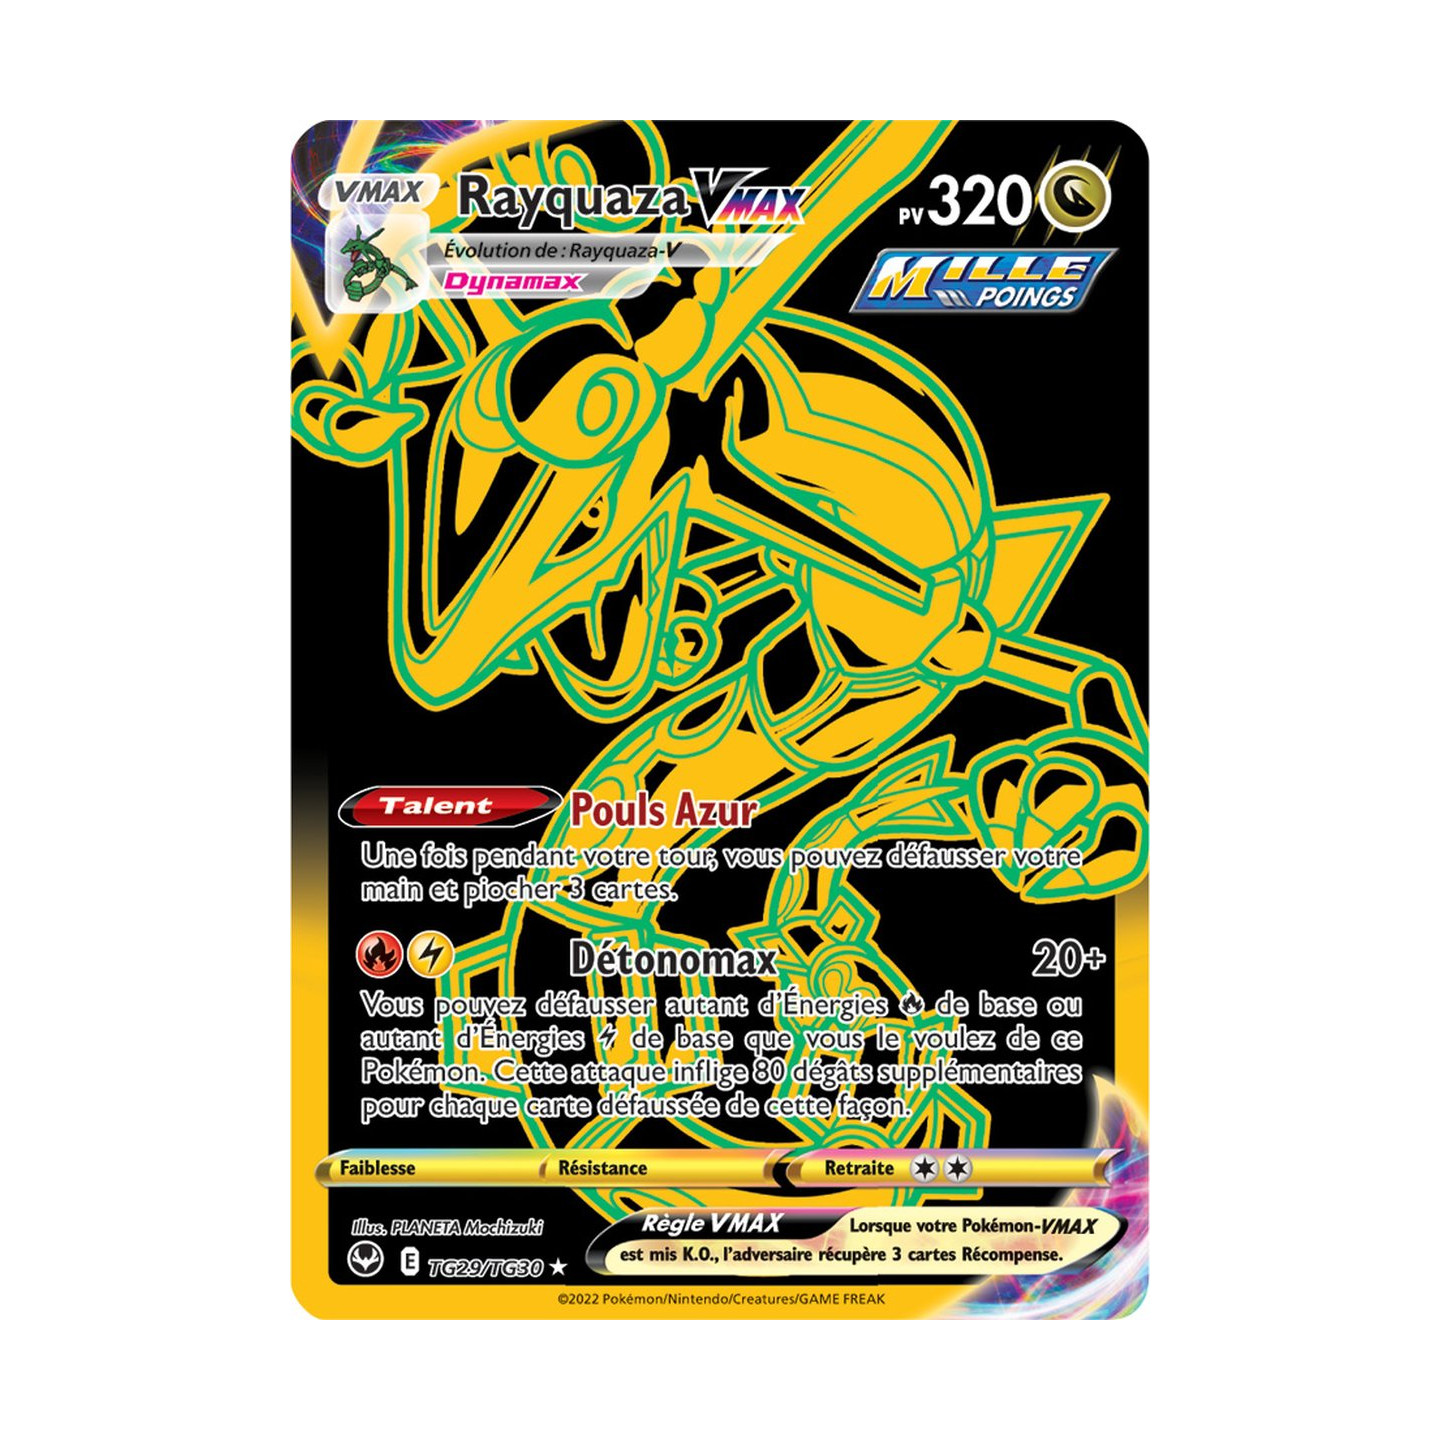 Rayquaza VMAX - TG29/TG30 - Secrète Gold Mille Poings - Carte Pokémon  Tempête Argentée EB12 - DracauGames